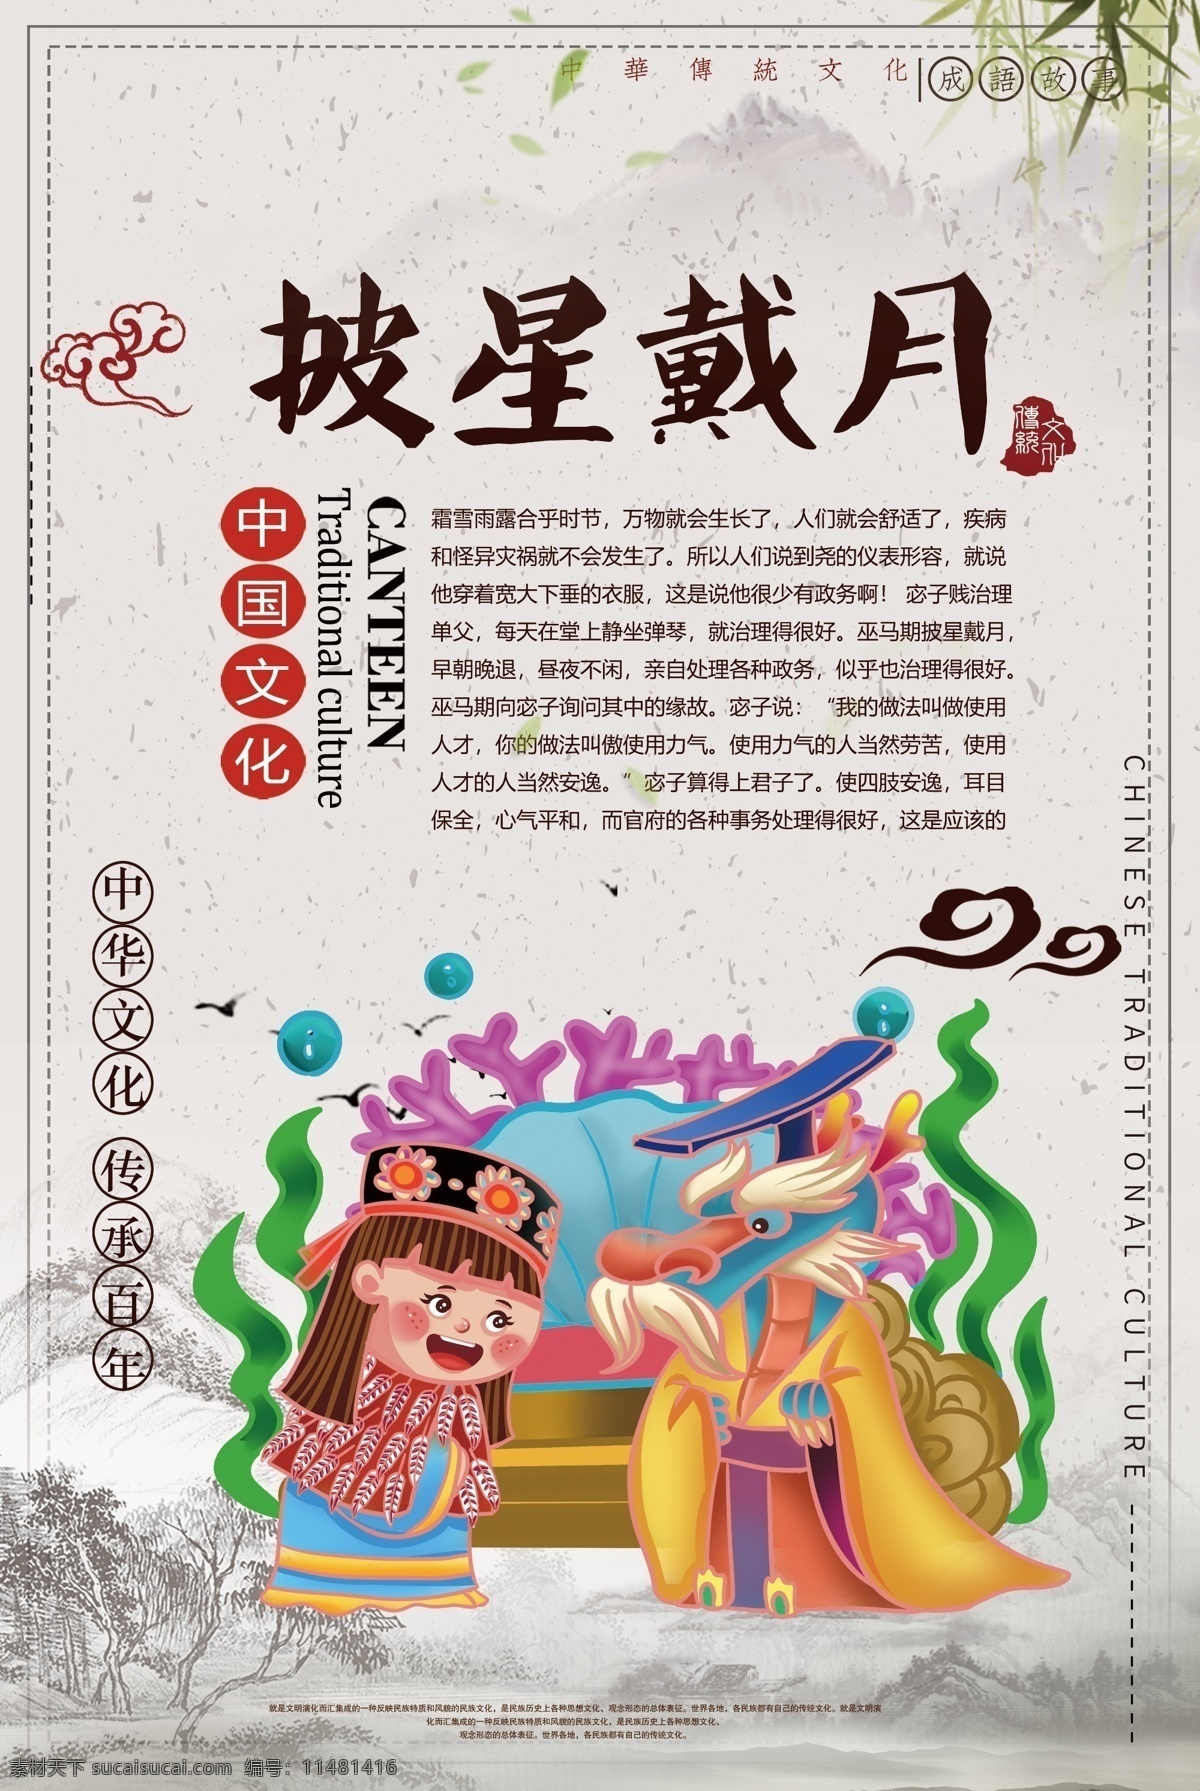 披星戴月 成语 海报 中国文化 中华传统 成语故事 中国风 教育 教学 插画 典故 儿童读物 成语海报